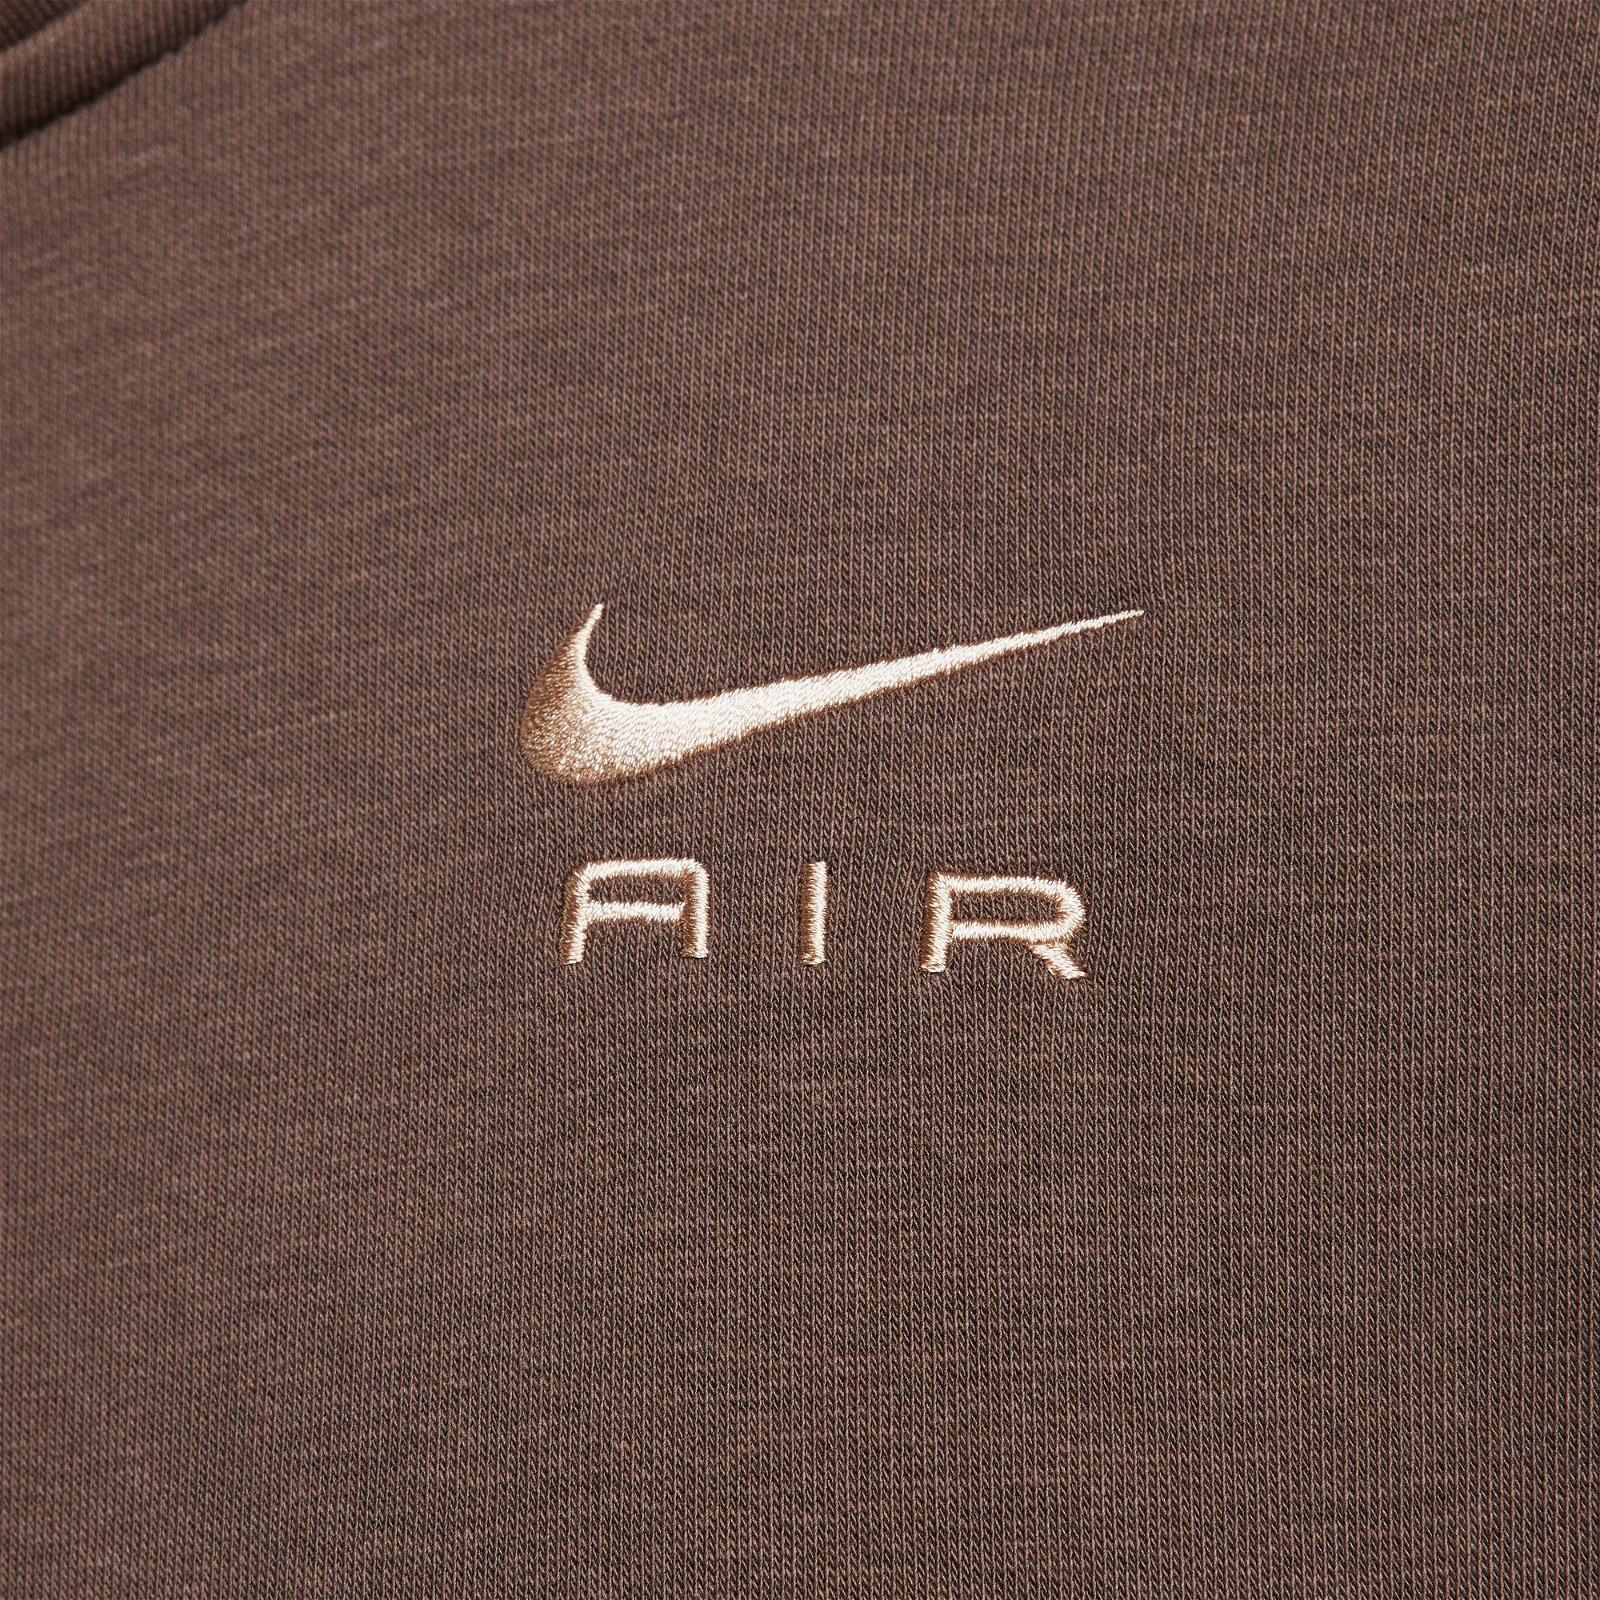 Nike Sportswear Air Fleece Top Kadın Kahverengi Uzun Kollu T-Shirt